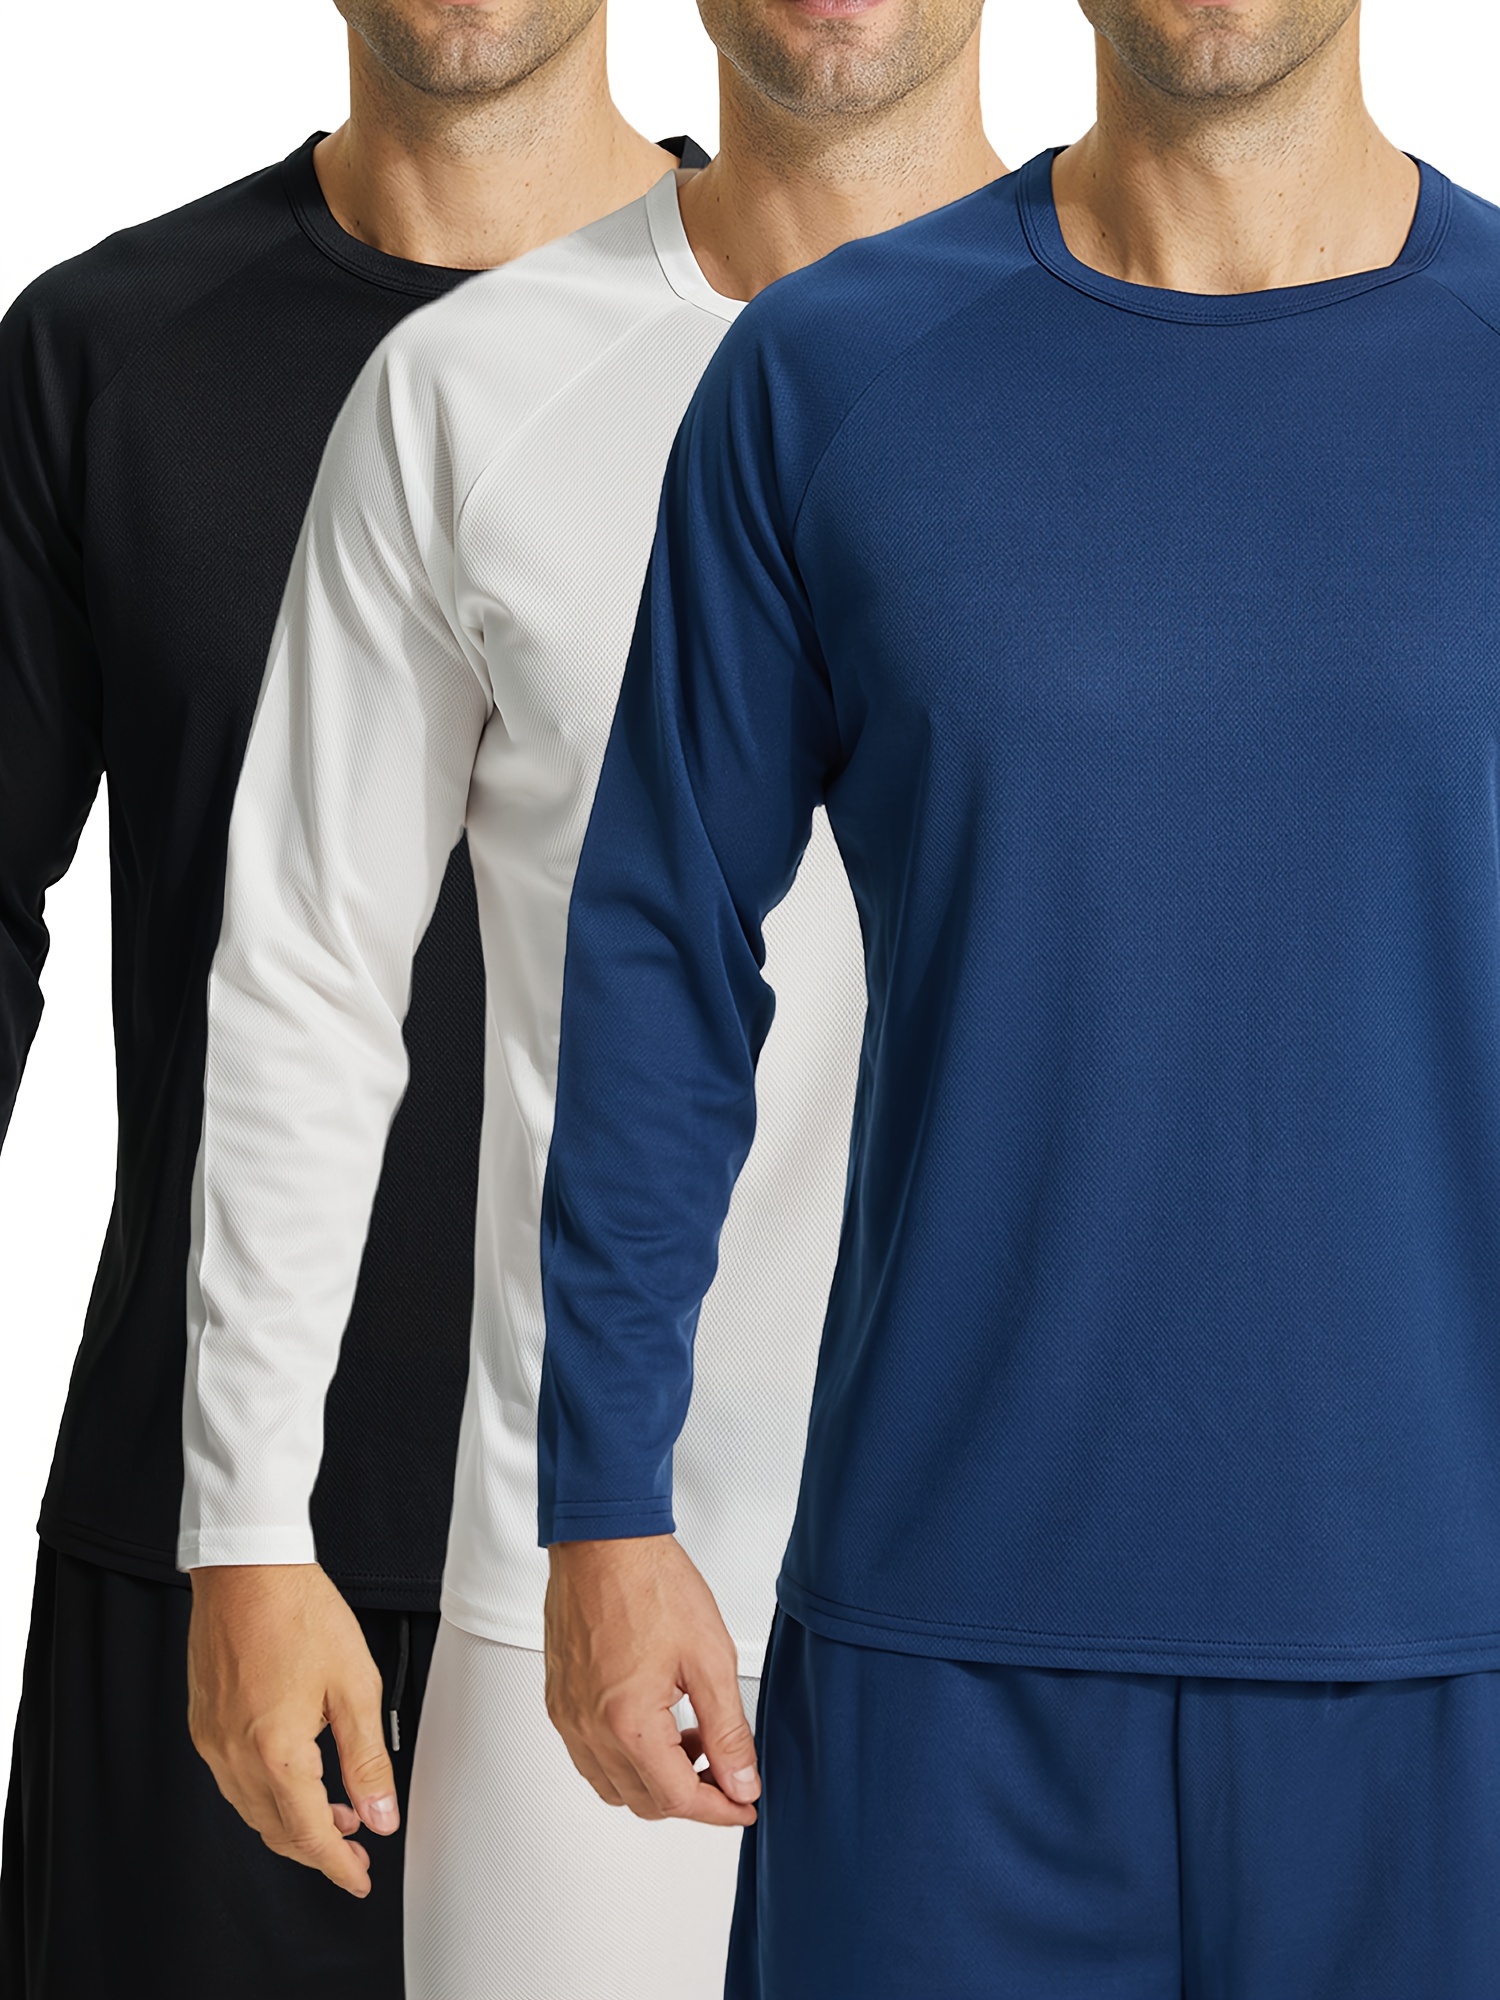 Camiseta de compresión para hombre, ropa deportiva de manga larga, secado  rápido